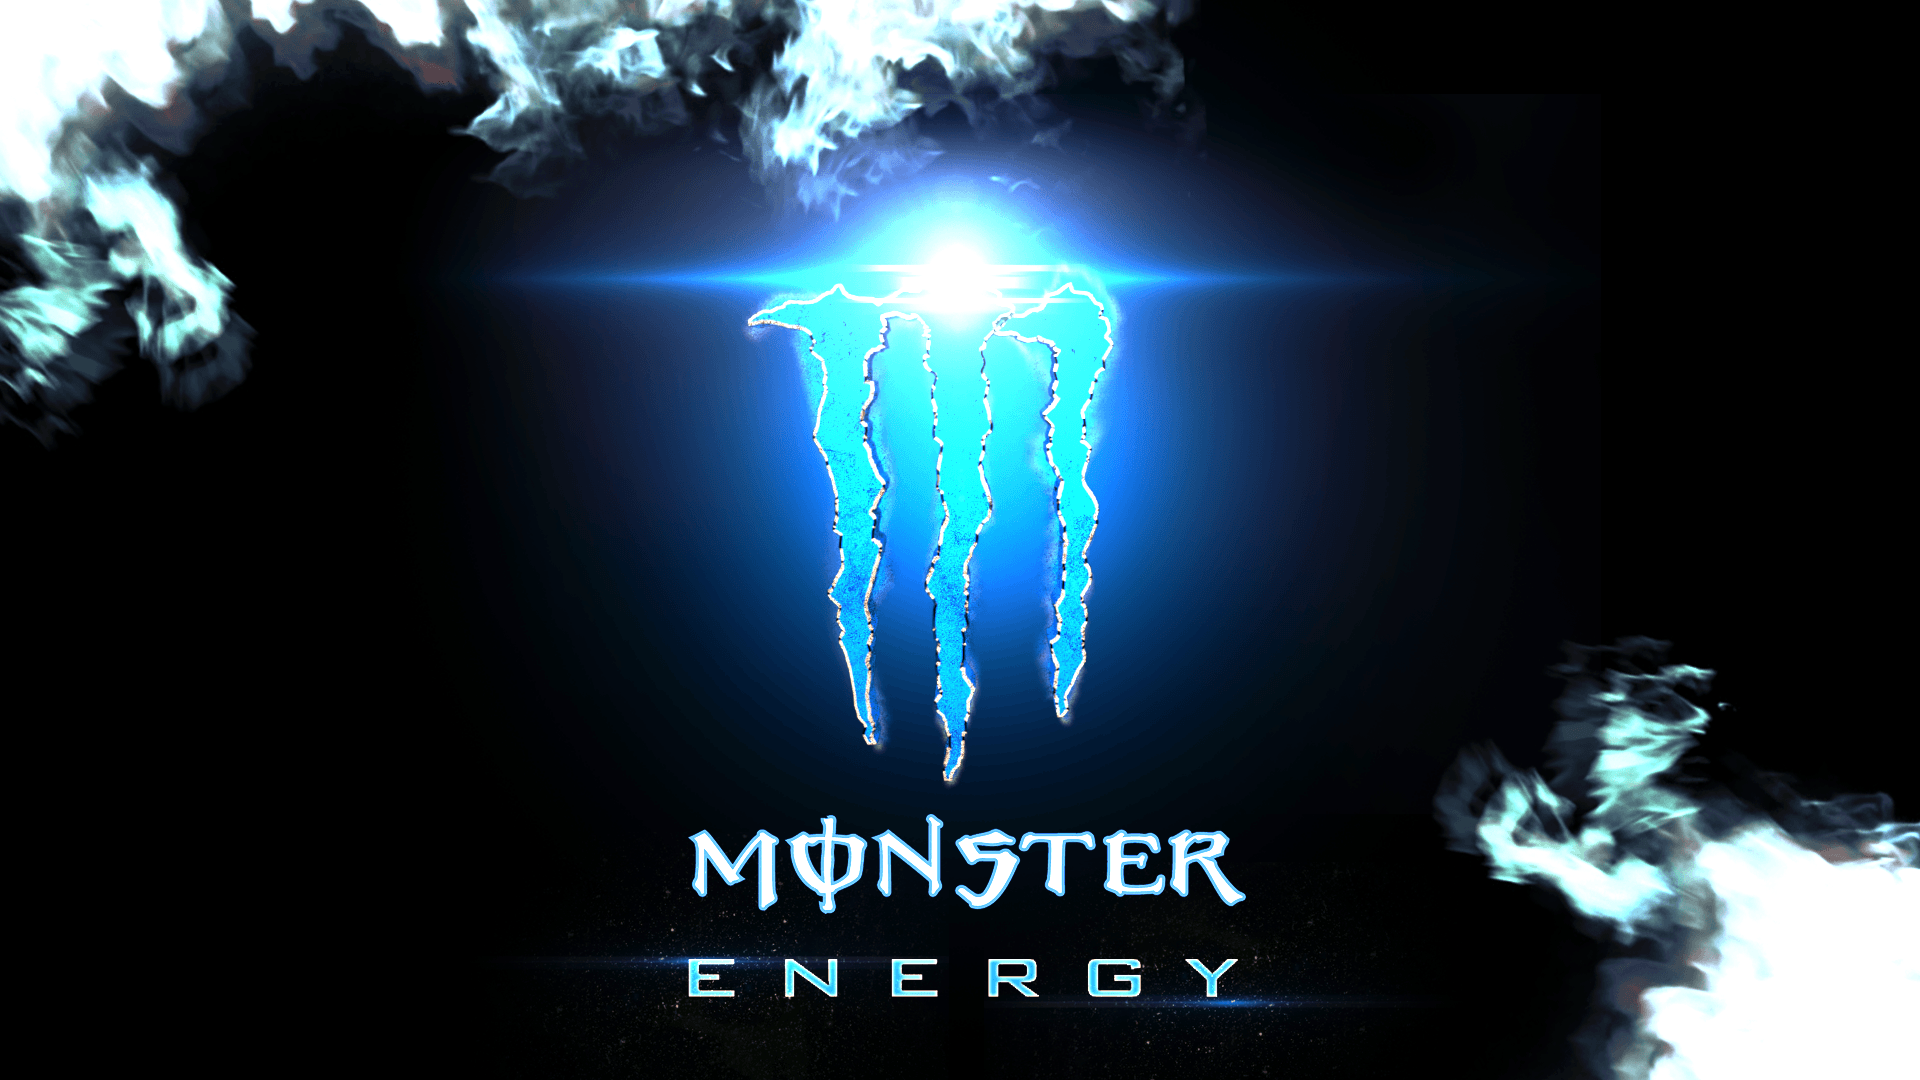 Monster Energy Background. Wallpaper, Background, Image, Art